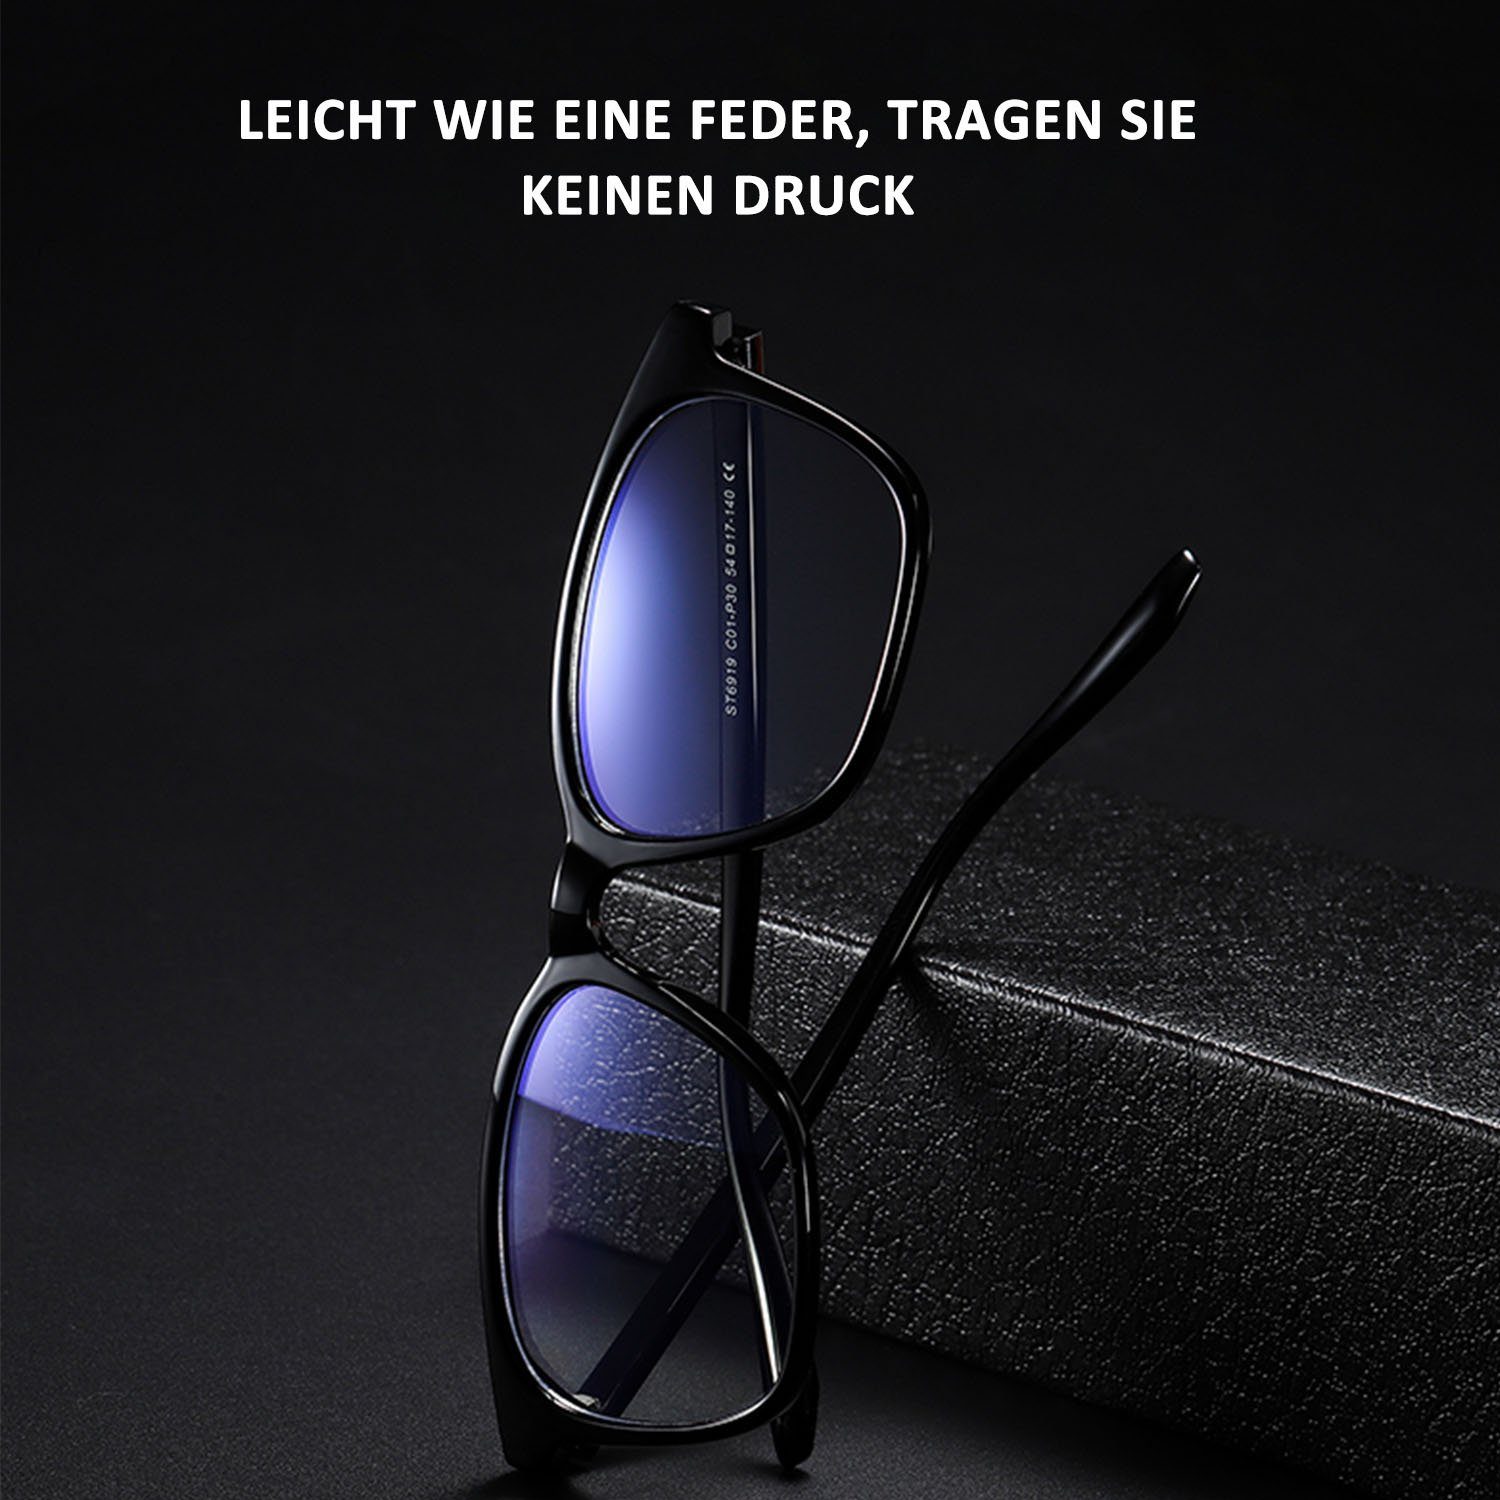 Retro Transparent MAGICSHE Blendschutz Sehstärke BlendschutzBlaulicht-Schutzbrillen Lesebrille ohne